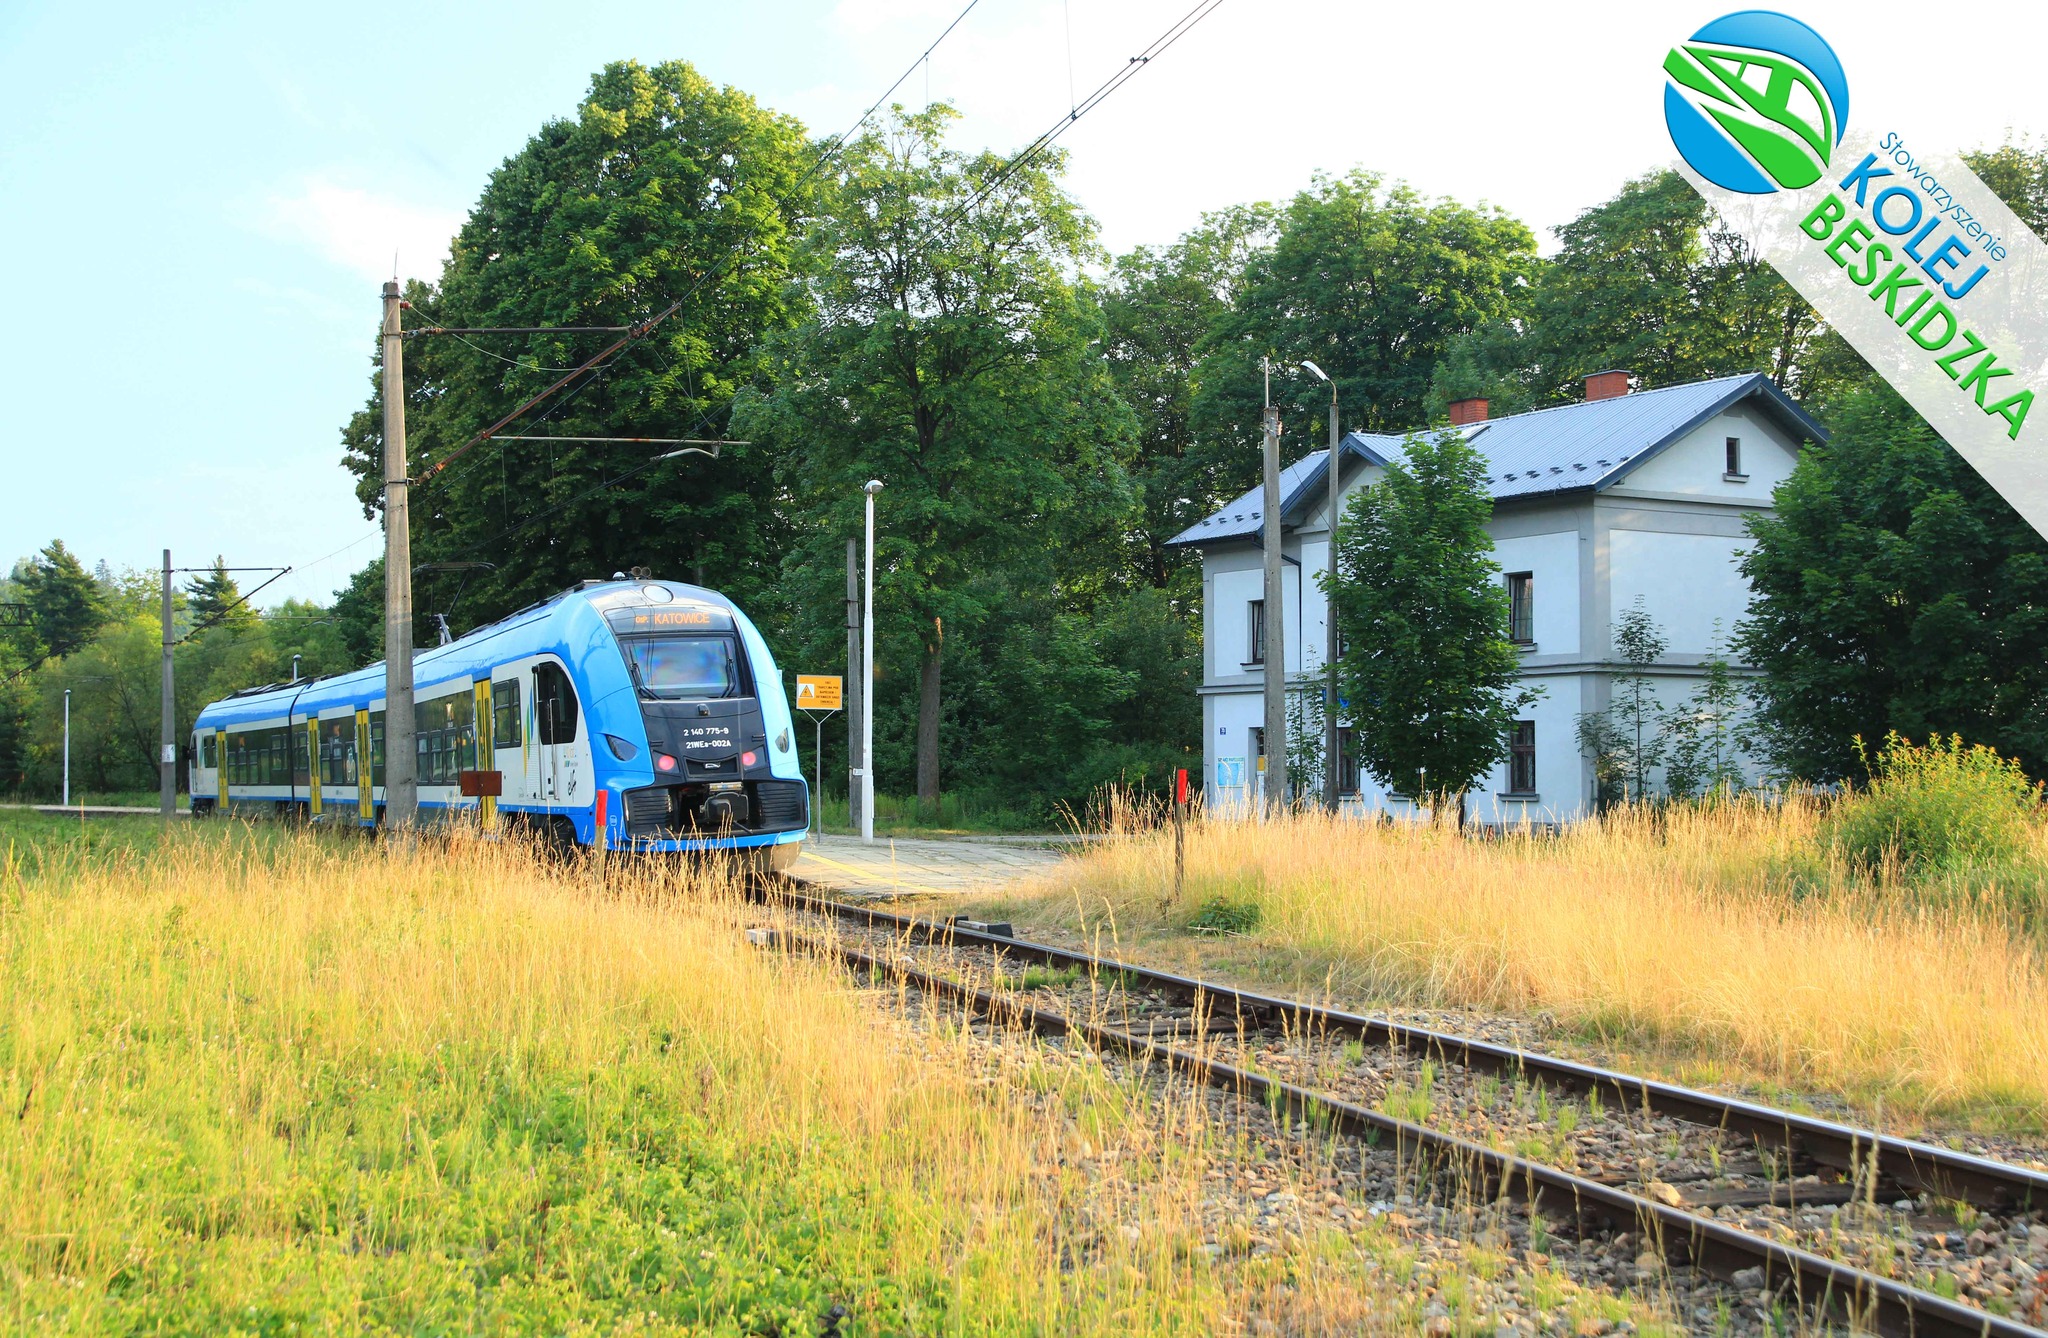 Ogłoszono przetarg na remont linii kolejowej nr 97 Żywiec-Sucha Beskidzka!